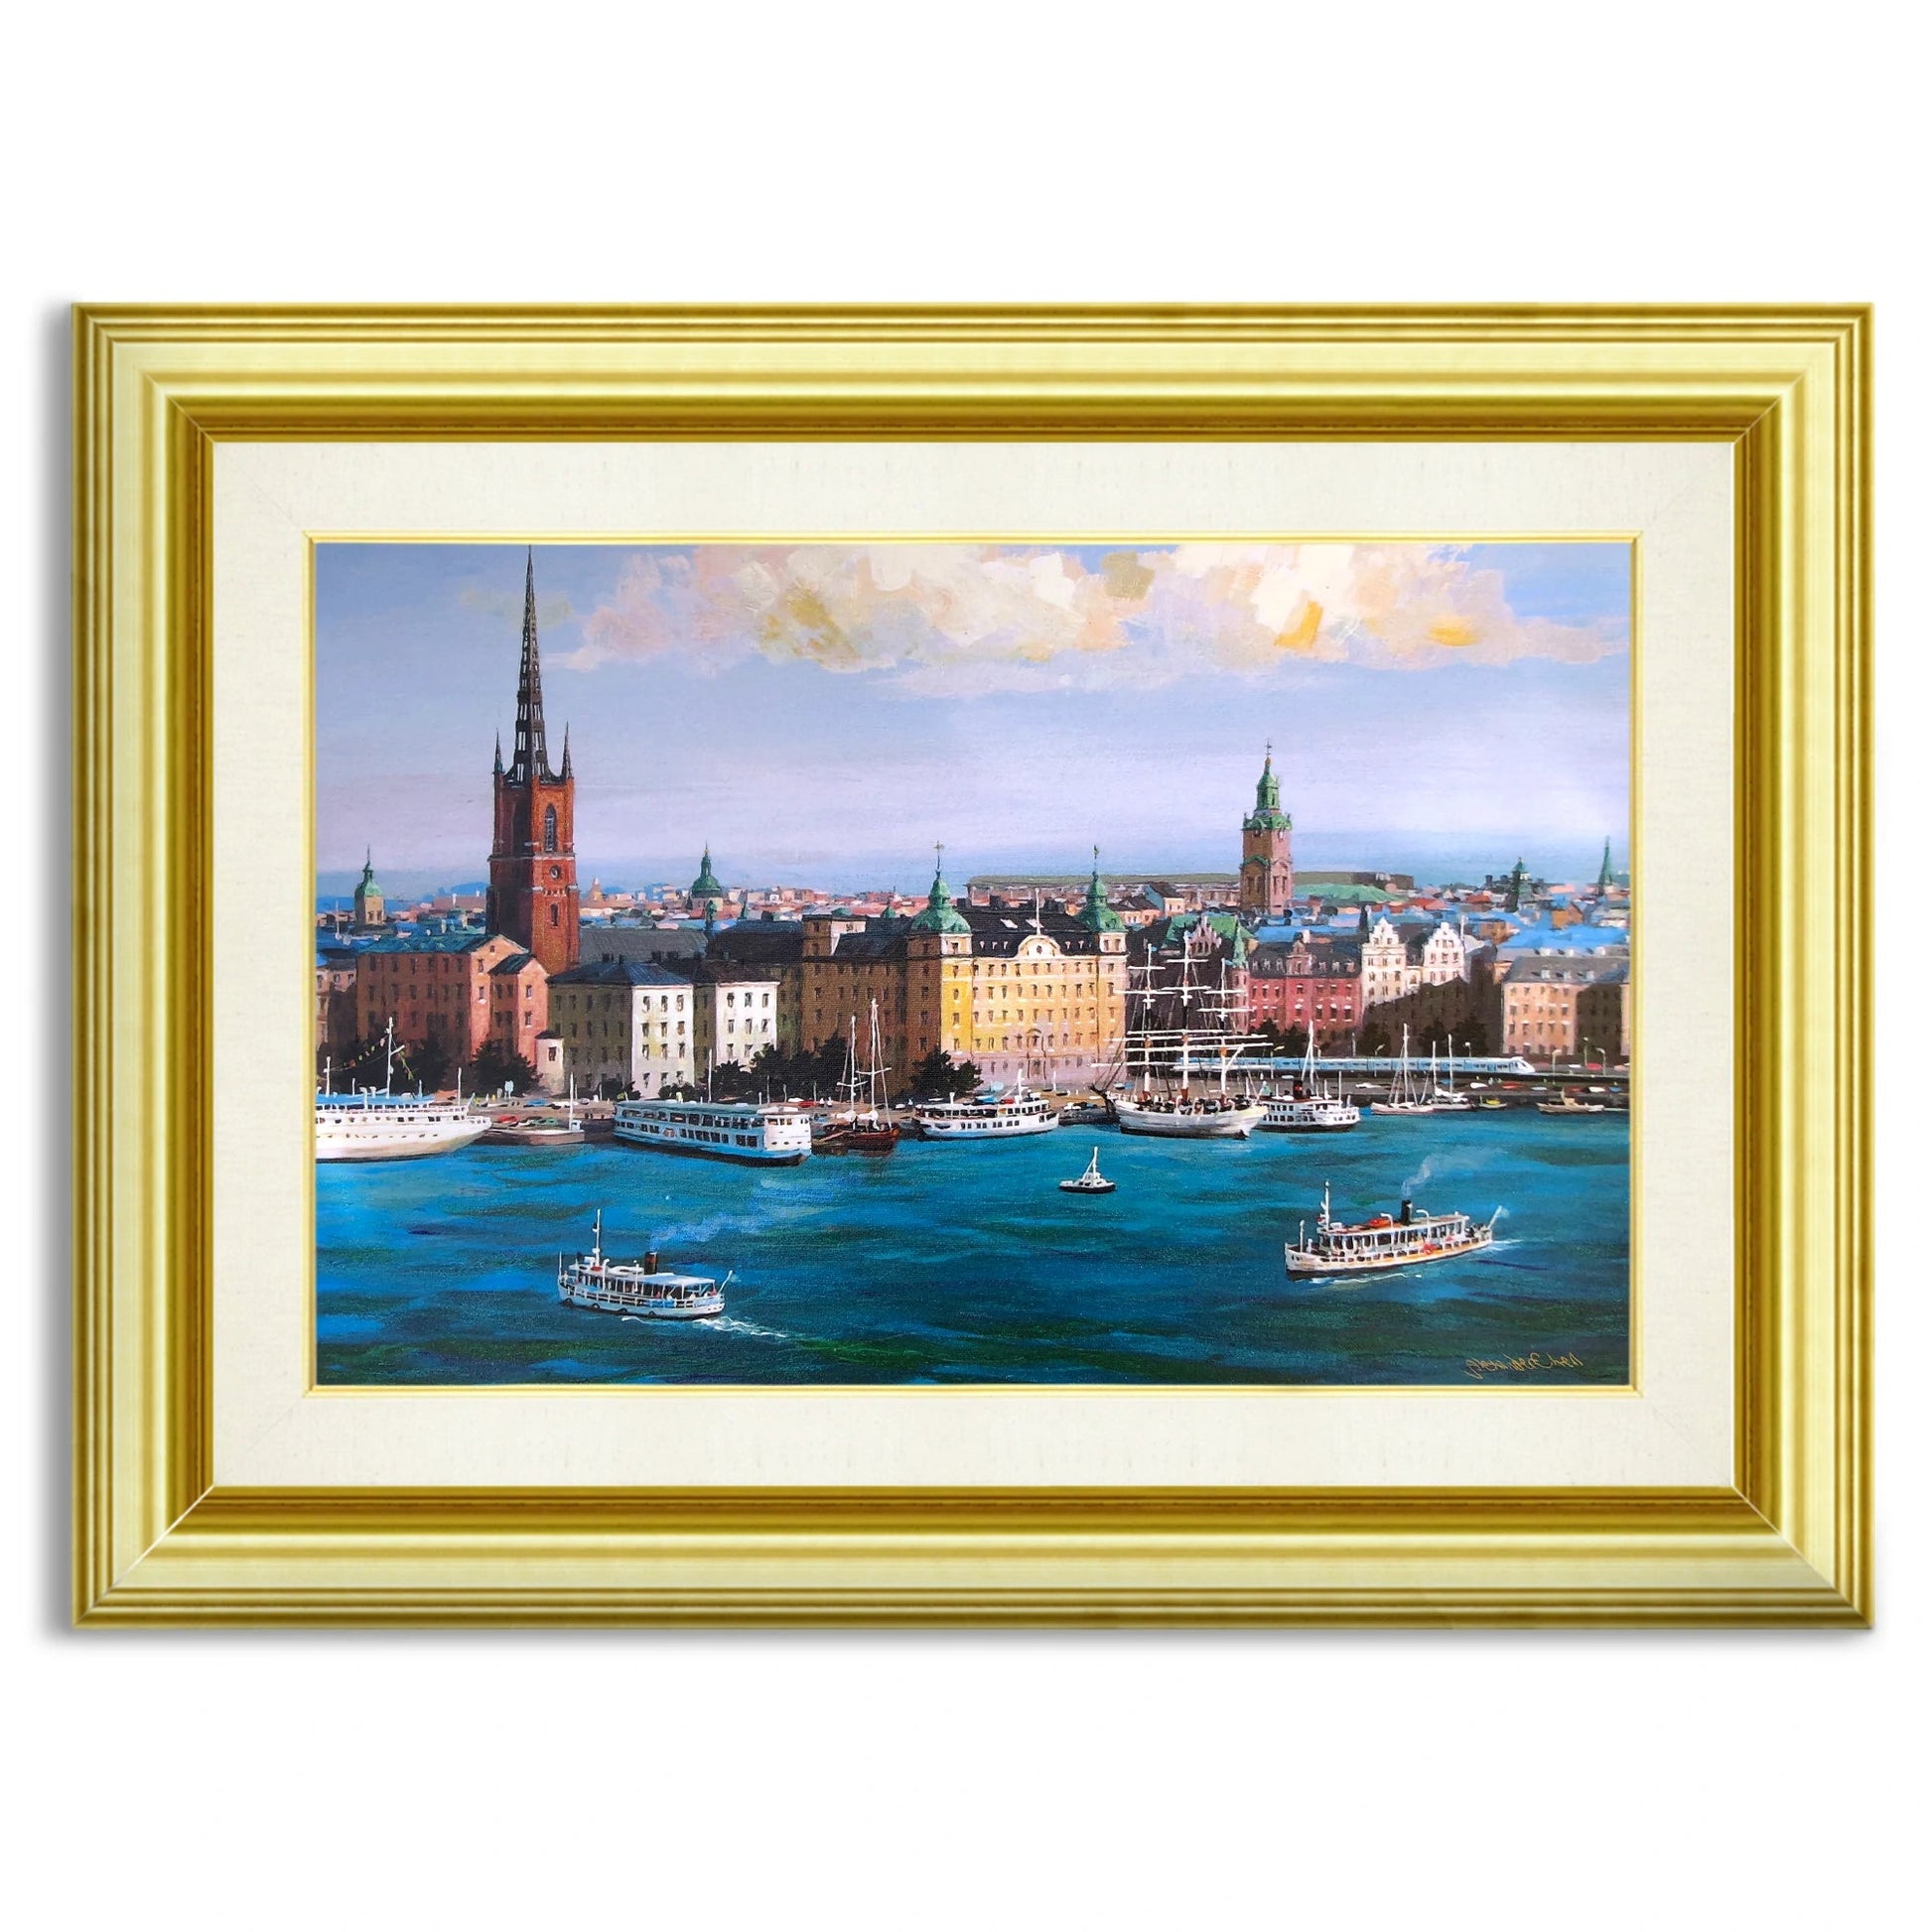 Alexander Chen - Stockholm Skyline #1 (UNFRAMED) - 16" x 24" - Giclee on Canvas - Hand Embellished